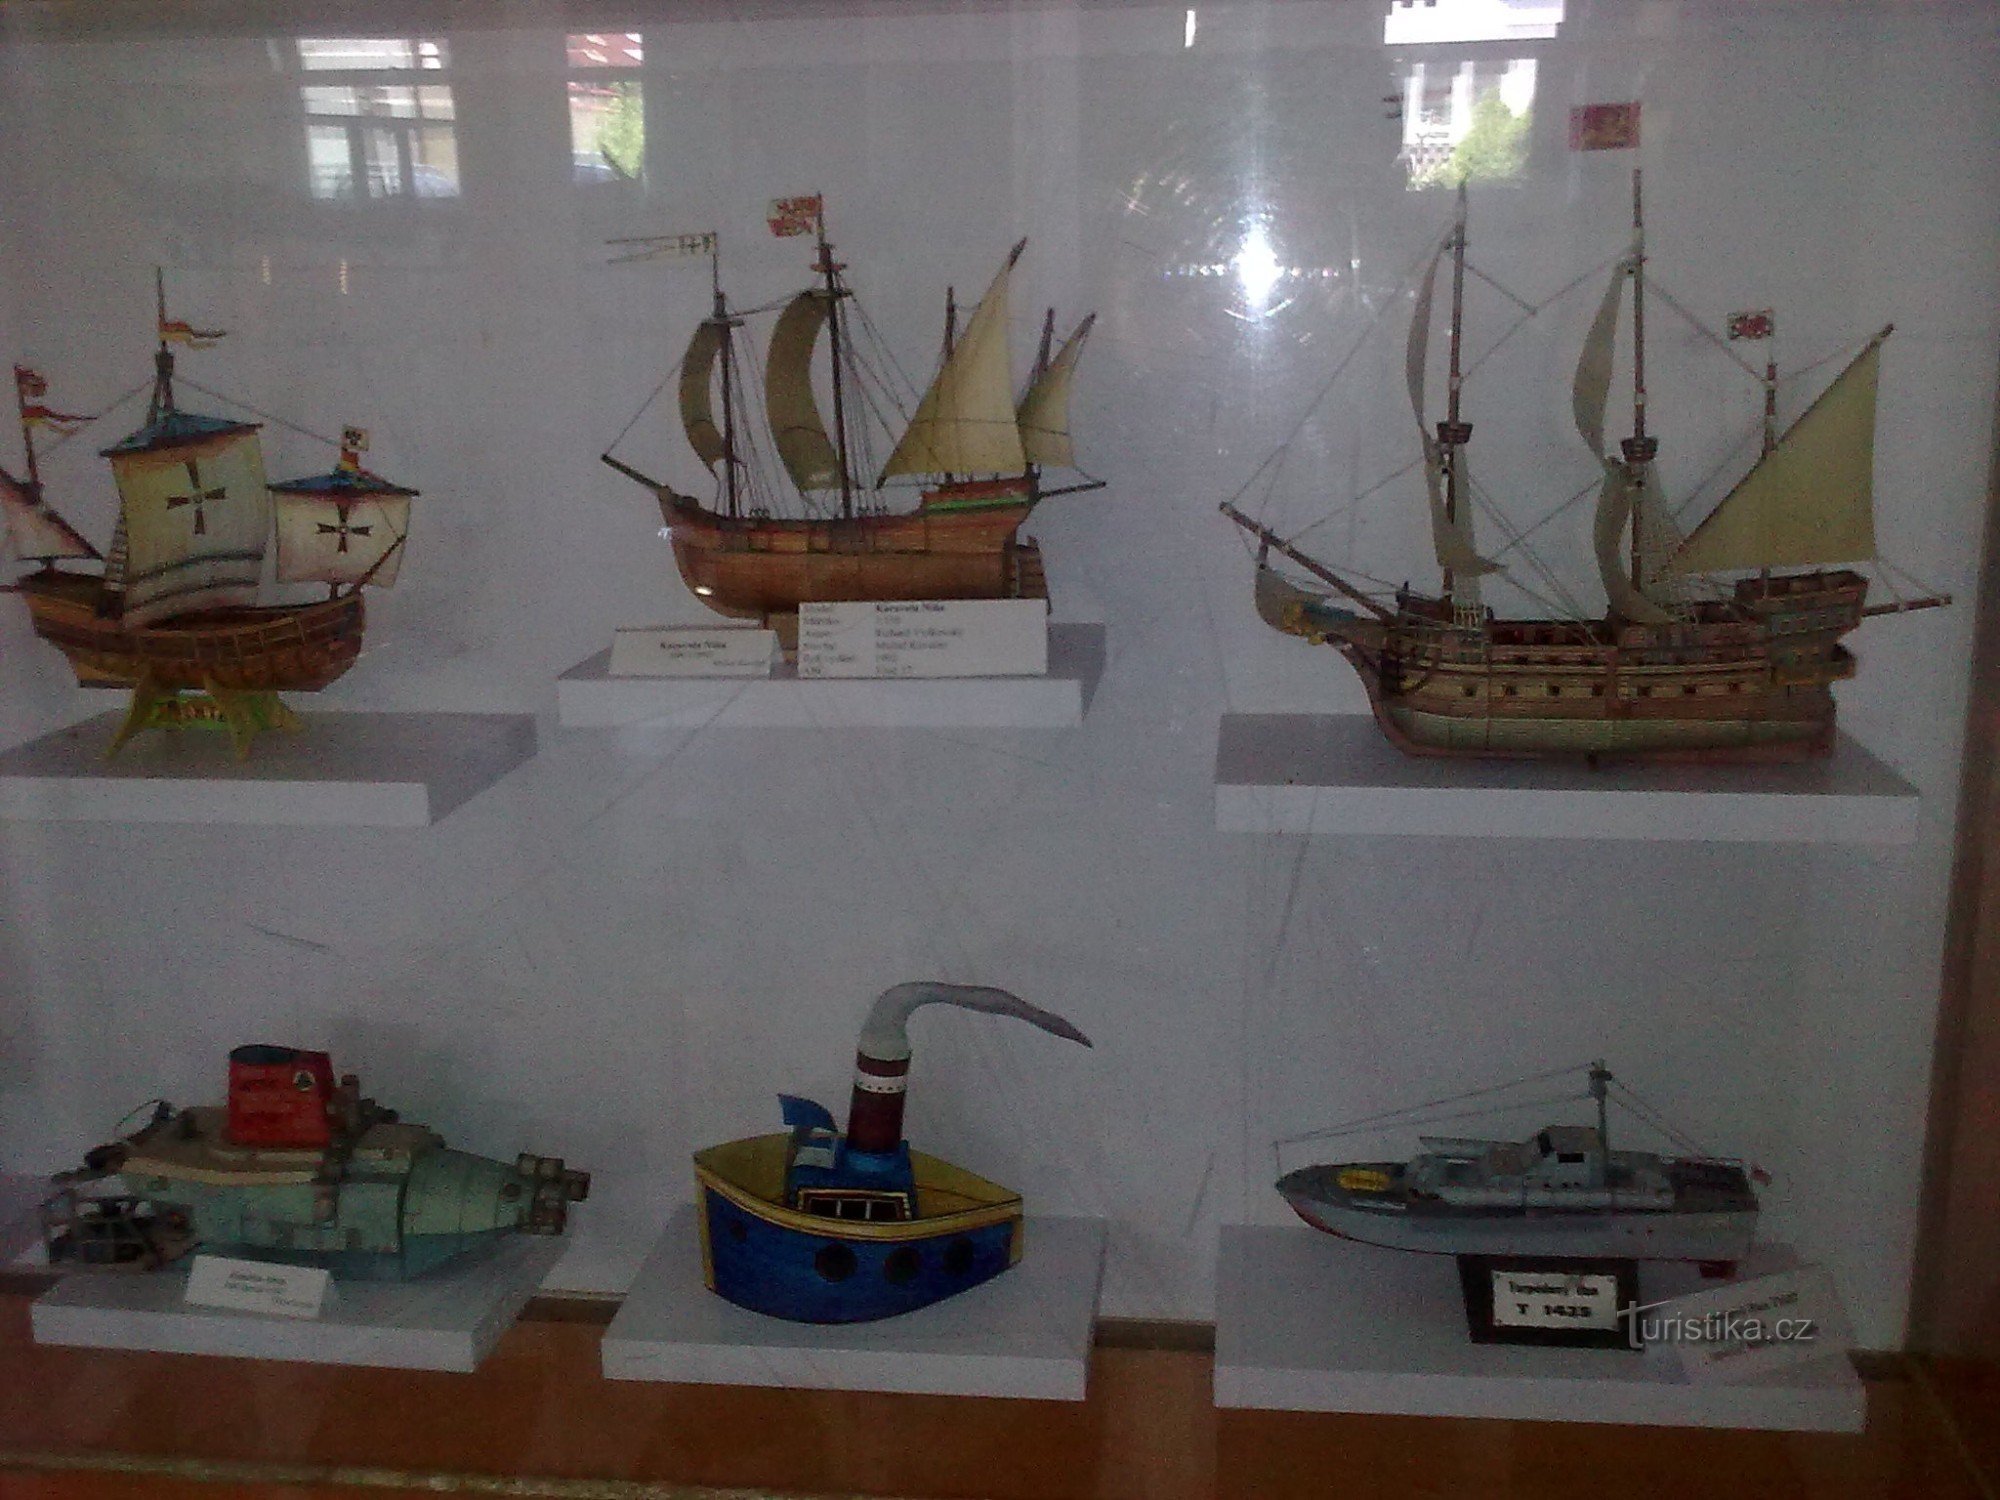 Museum van papieren modellen in Polici n Metuji